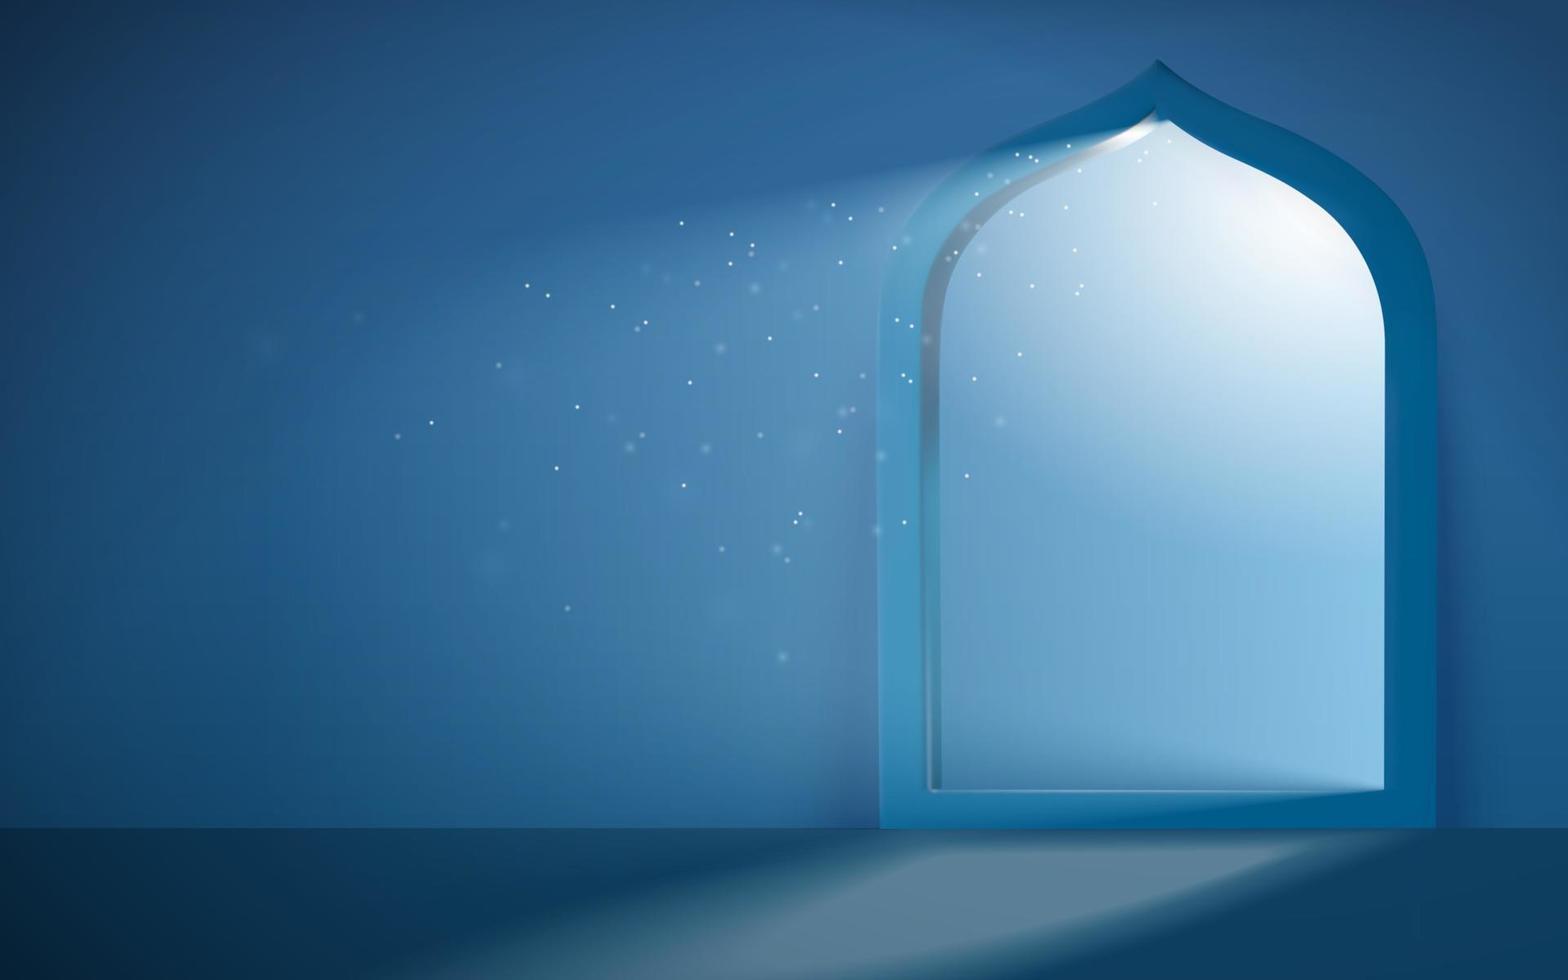 islam tema antecedentes en 3d diseño. plata luz de la luna reluciente mediante mezquita portal. concepto de sereno Ramadán noche. vector